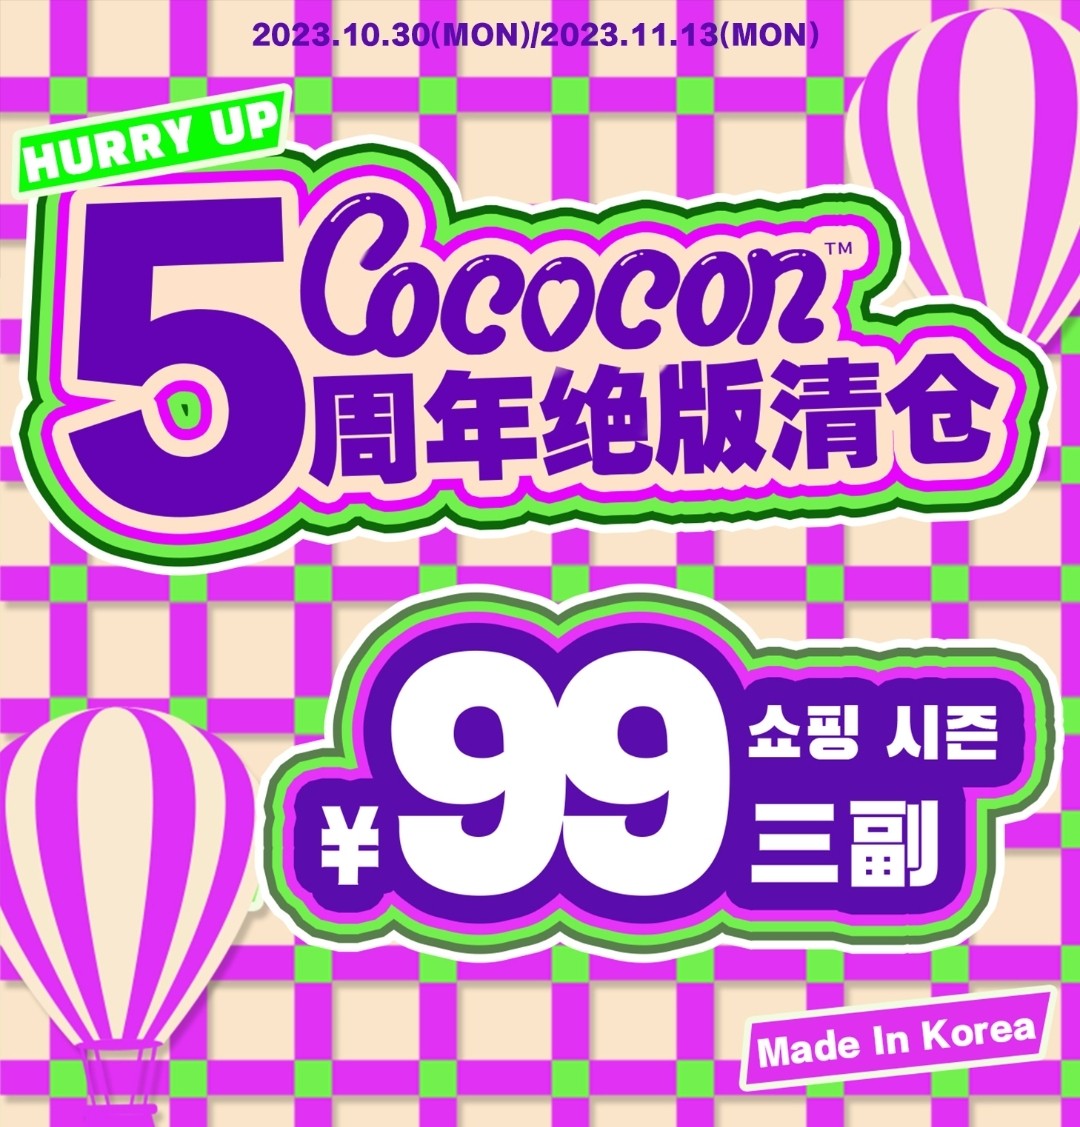 【年抛秒杀】COCOCON 5周年绝版清仓 今年超疯的 年度最低价已经来啦！